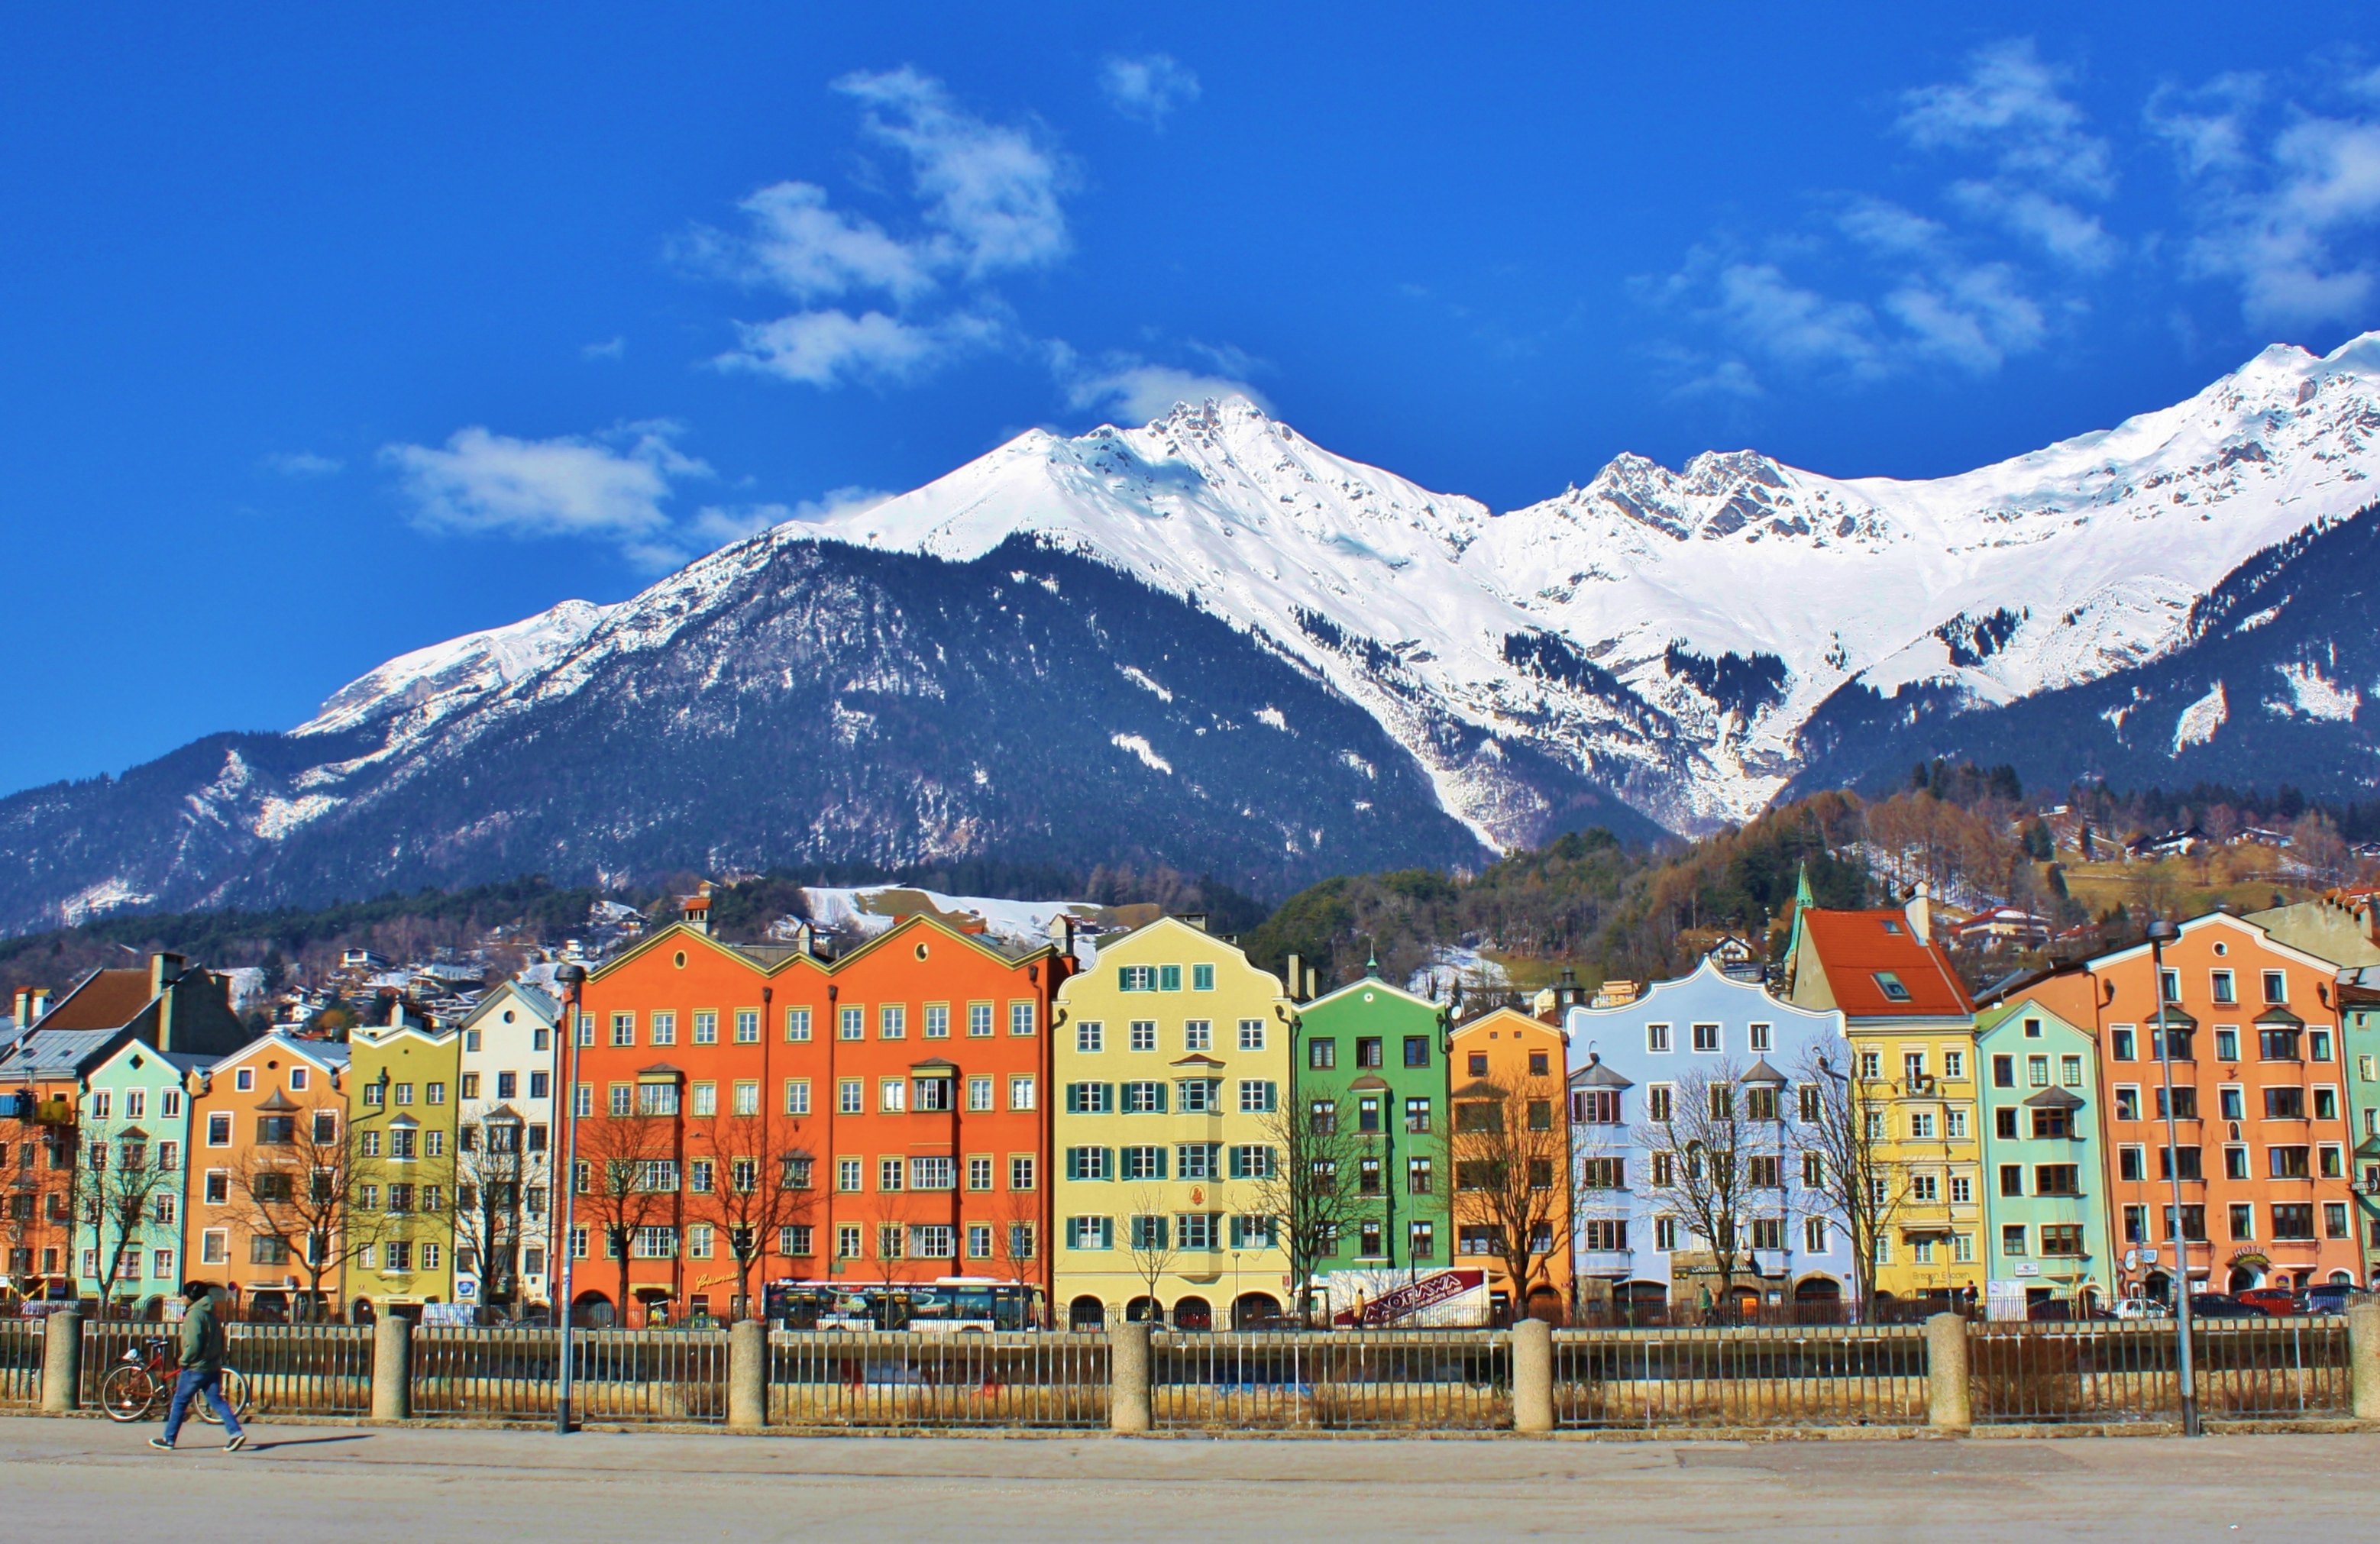 奥地利风景图片,奥地利著名小镇风景 - 伤感说说吧